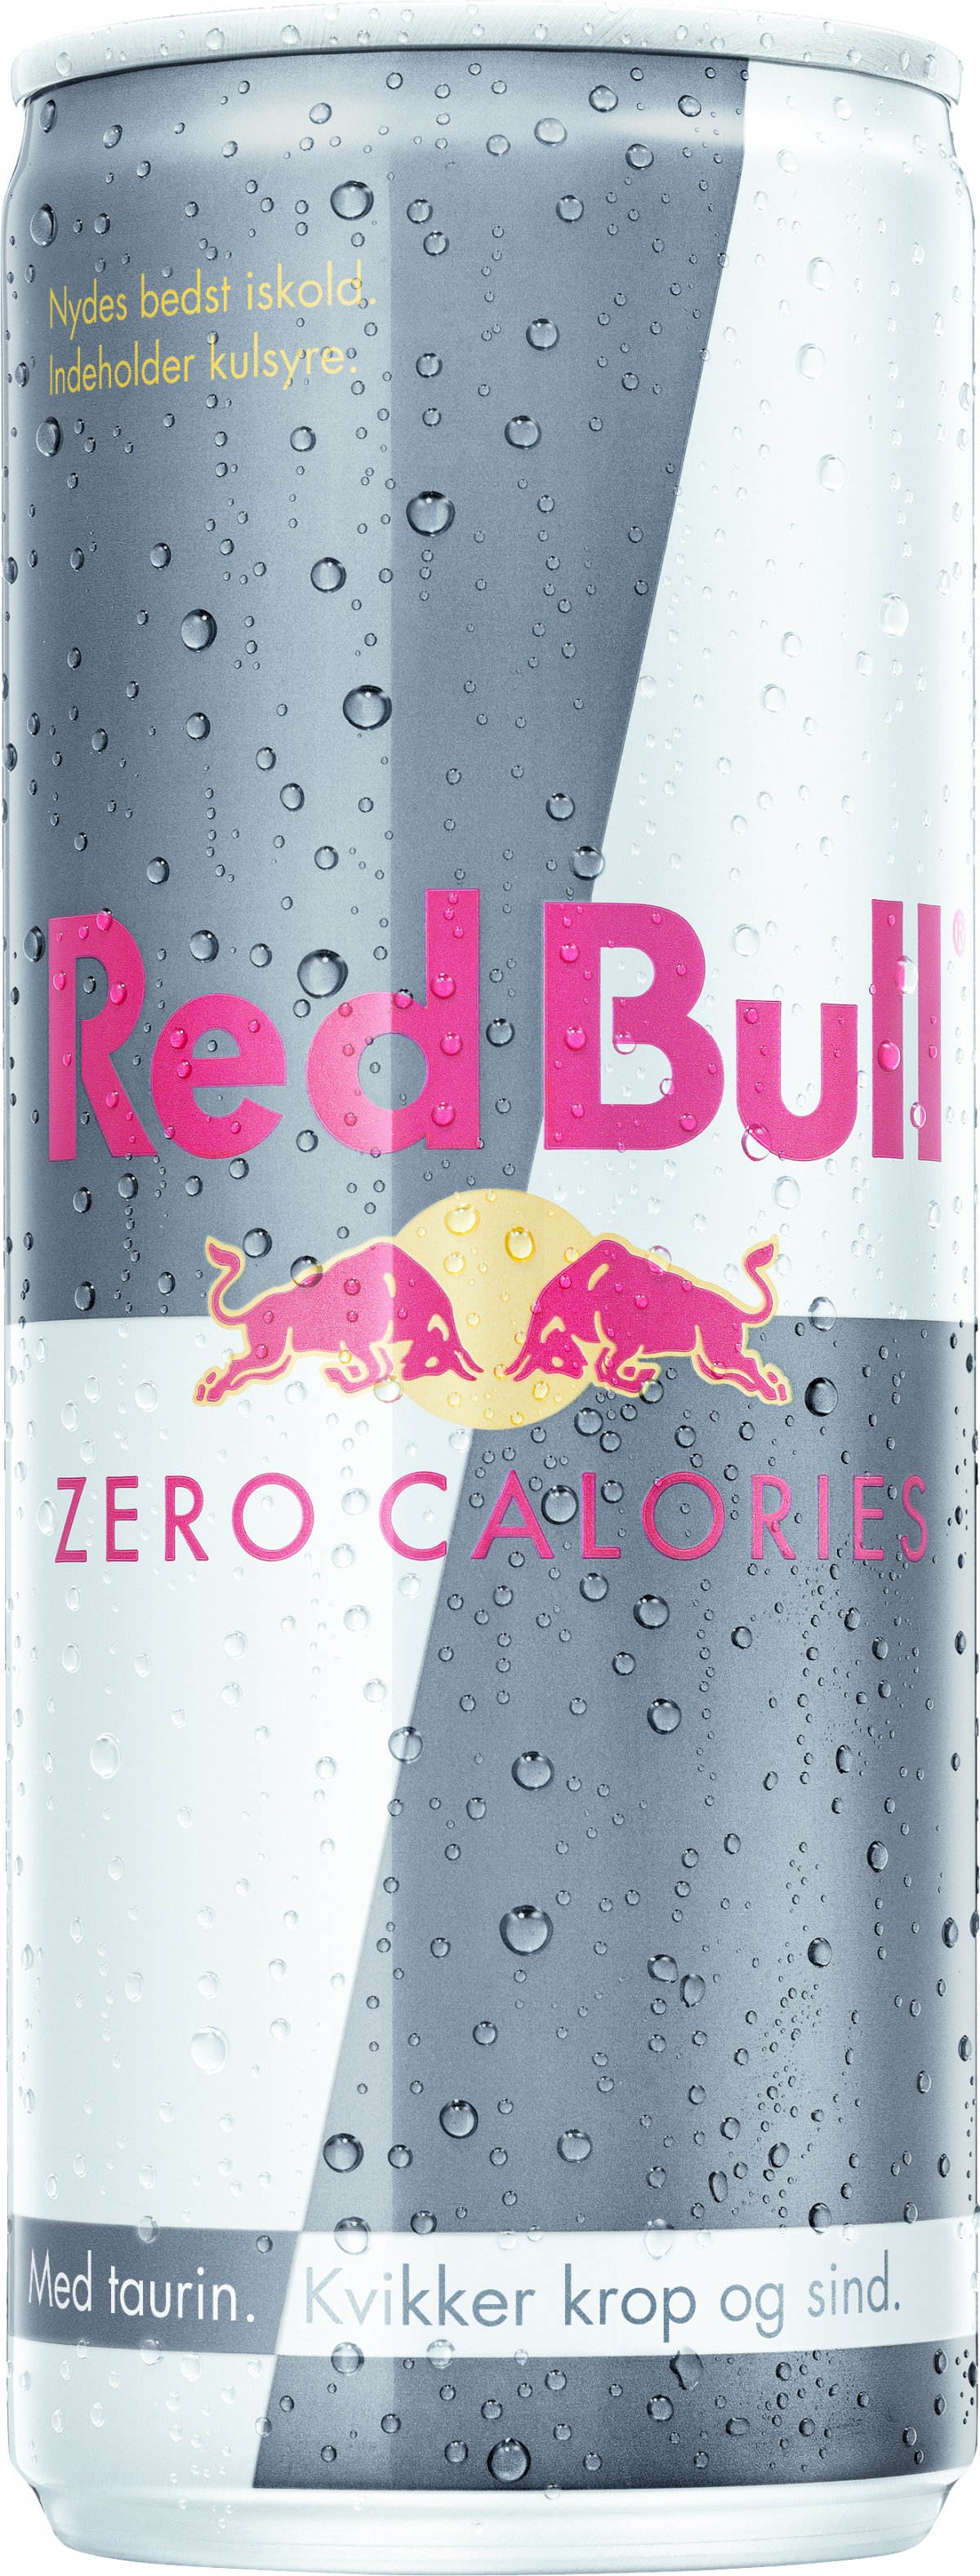 Hensigt Besiddelse 945 Red Bull Zero Calories - ENERGIDRIKKE - VIN MED MERE .DK